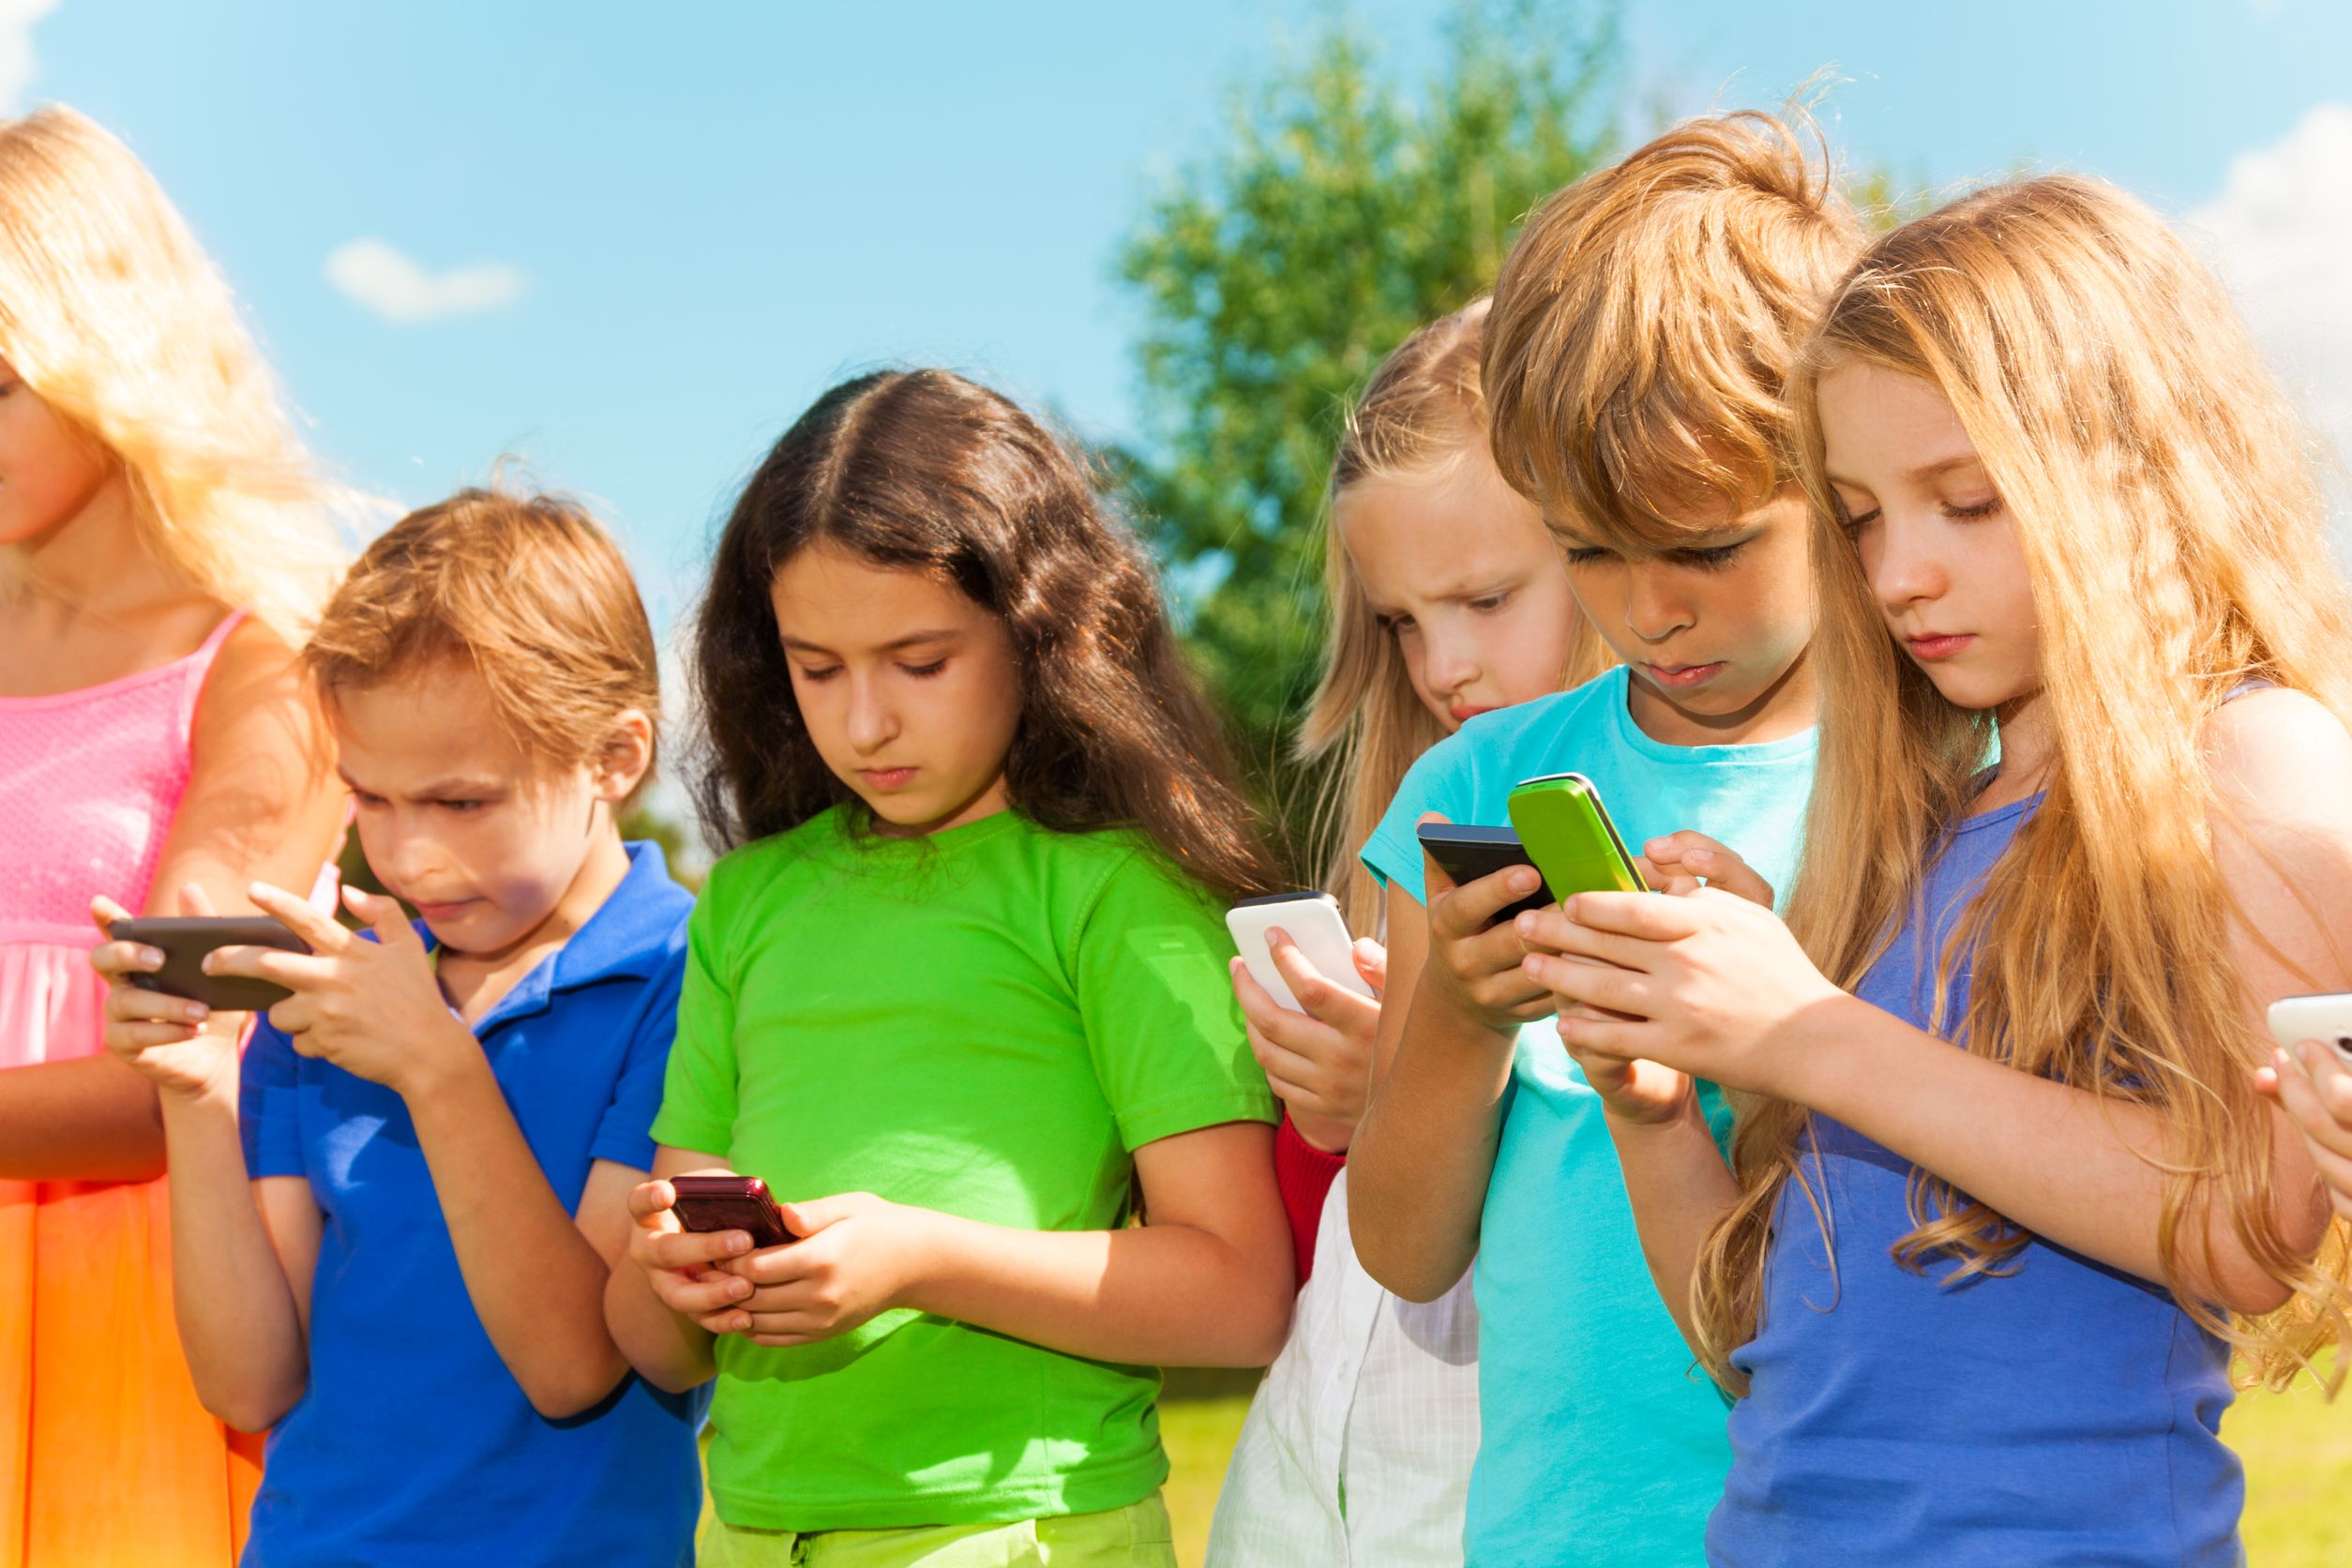 Общение подростков 13 лет. Ребенок со смартфоном. Общение детей. Подросток с телефоном. Дети играющие в телефон.